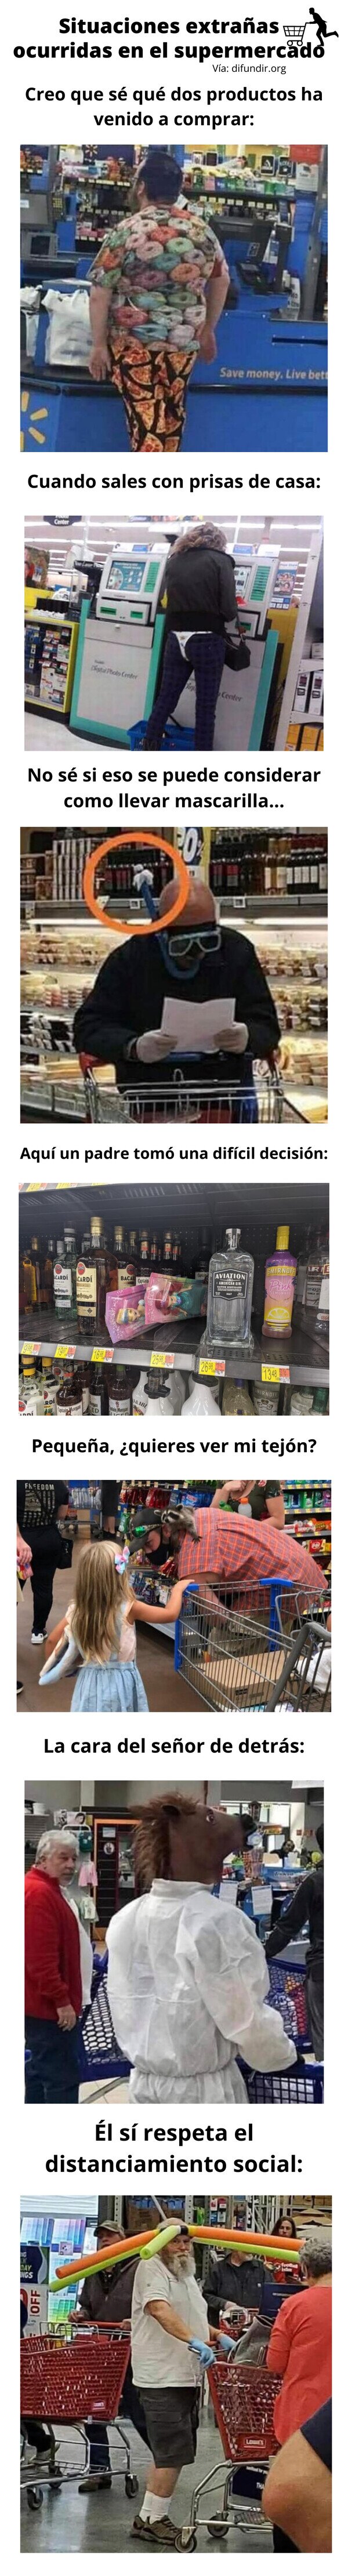 Meme_otros - Situaciones extrañas ocurridas en el supermercado